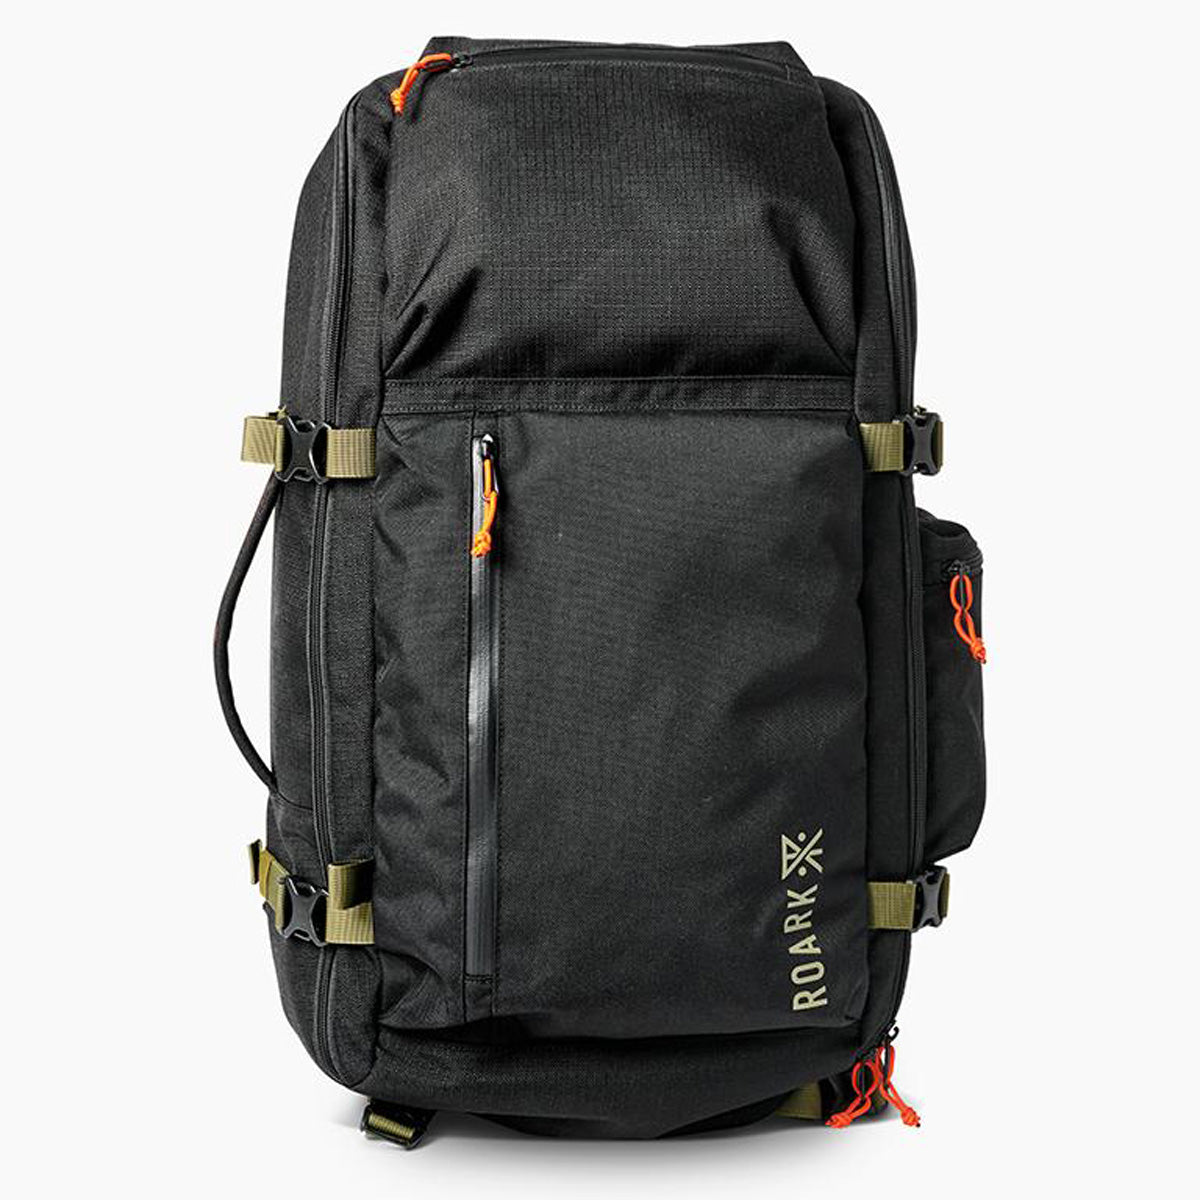 Roark 5 Day Mule Backpack - Black - 55l